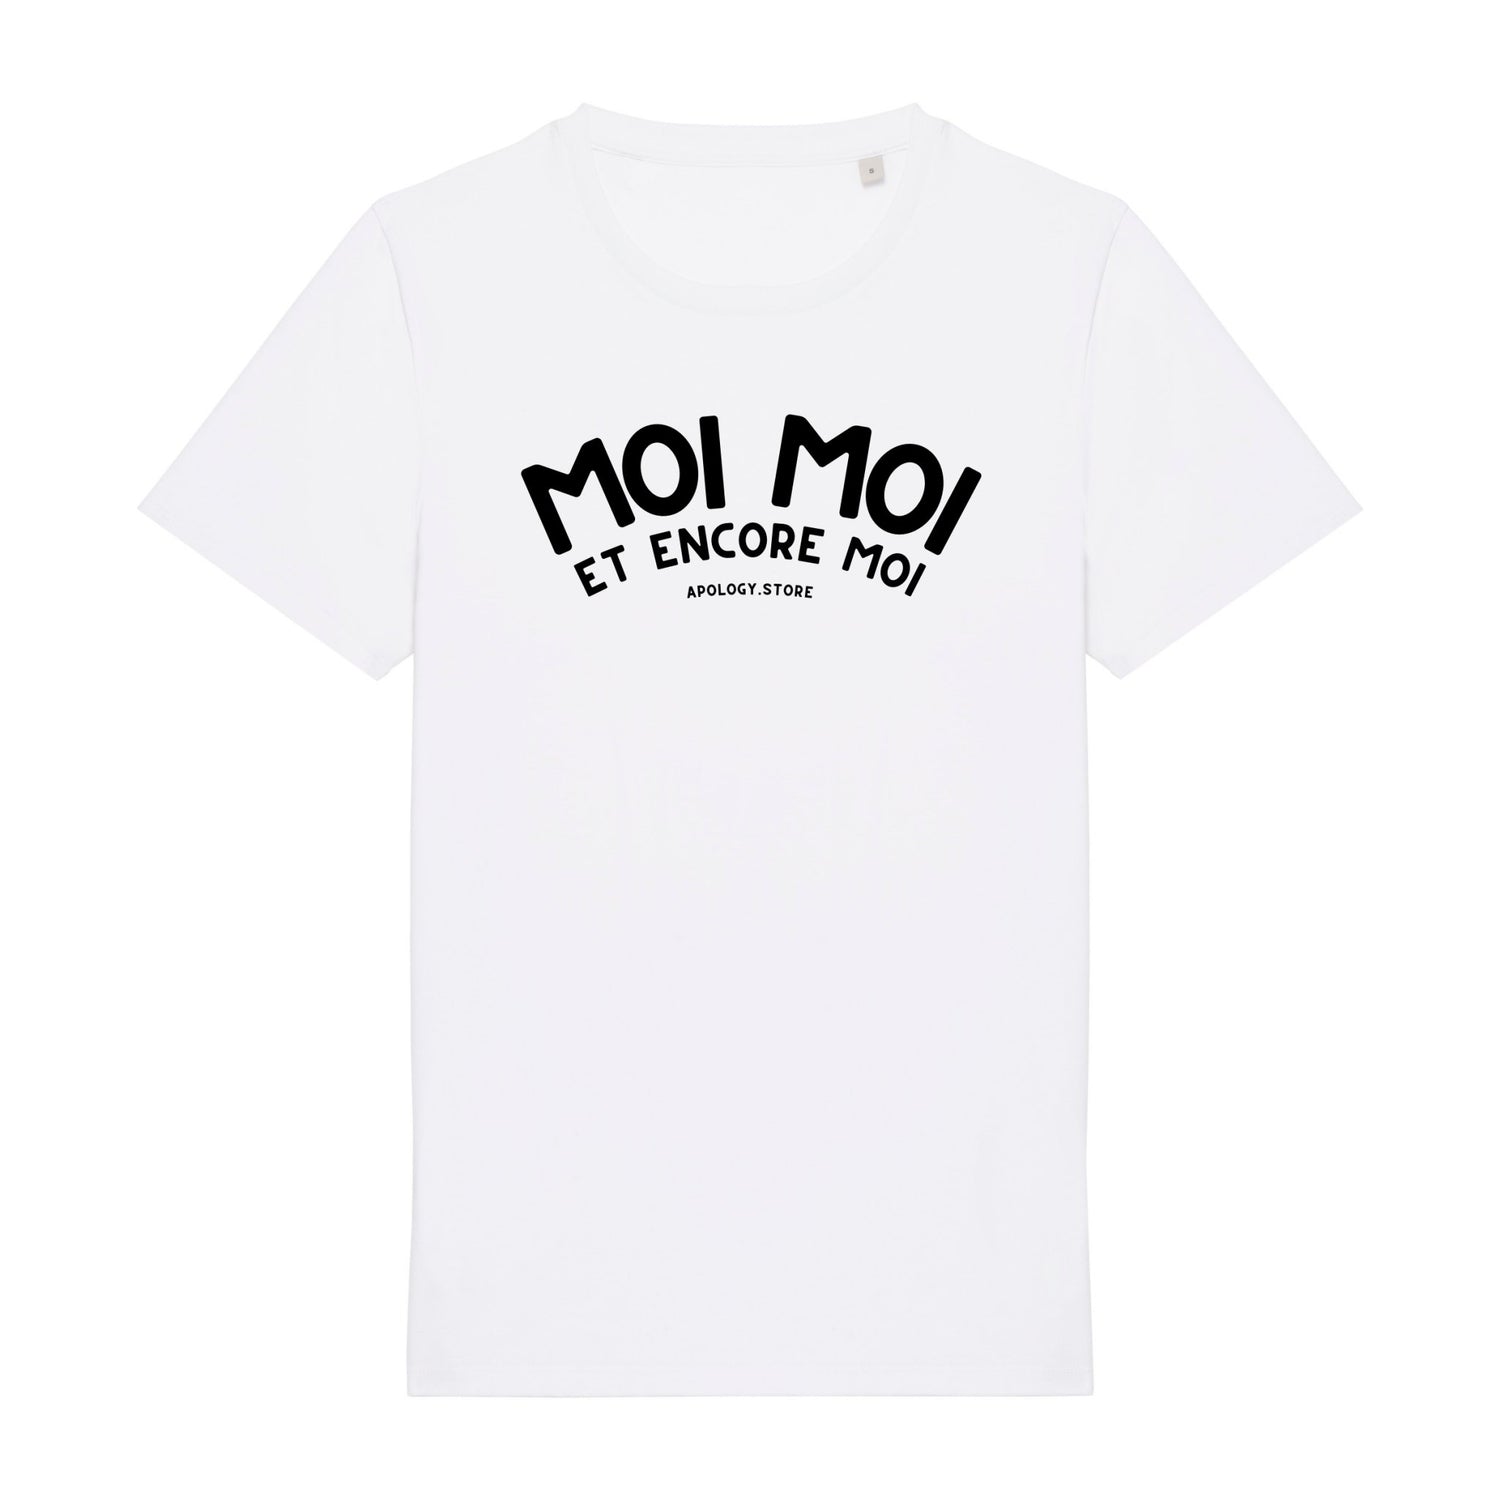 T-shirt Moi Moi et Encore Moi - Fabriqué au Portugal XS Blanc - Imprimé en France